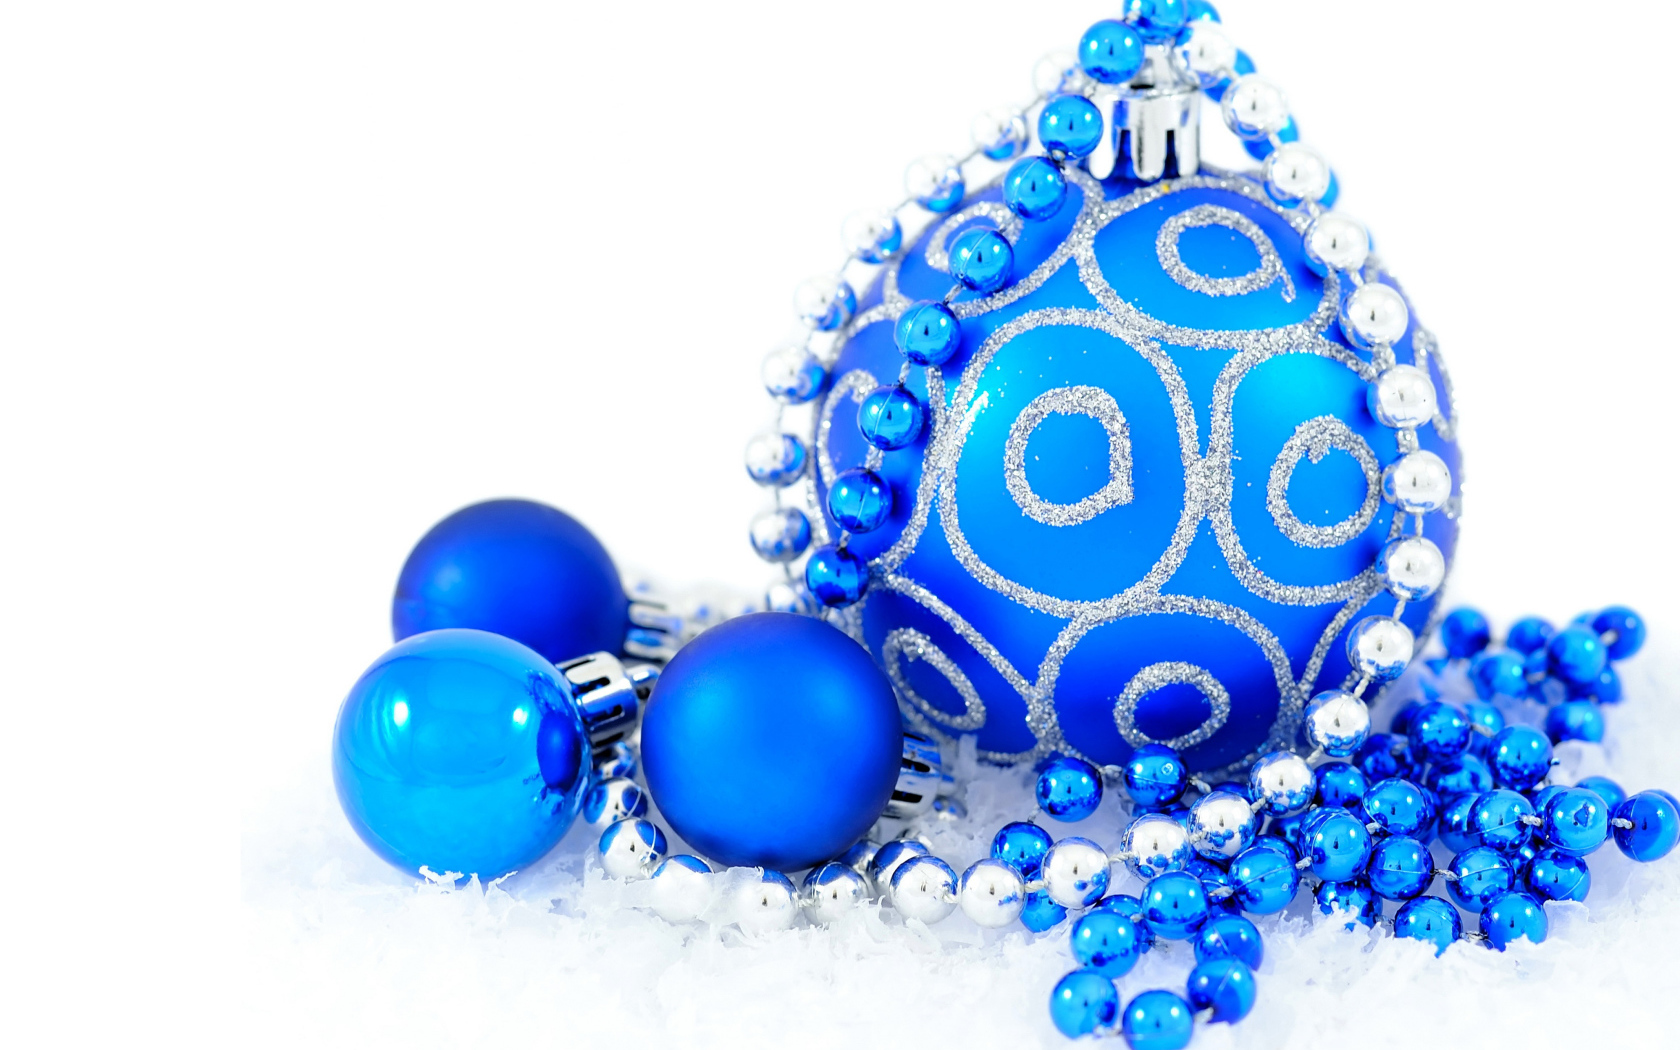 Голубые блестящие шарики с бусами на белом фоне на Новый год 